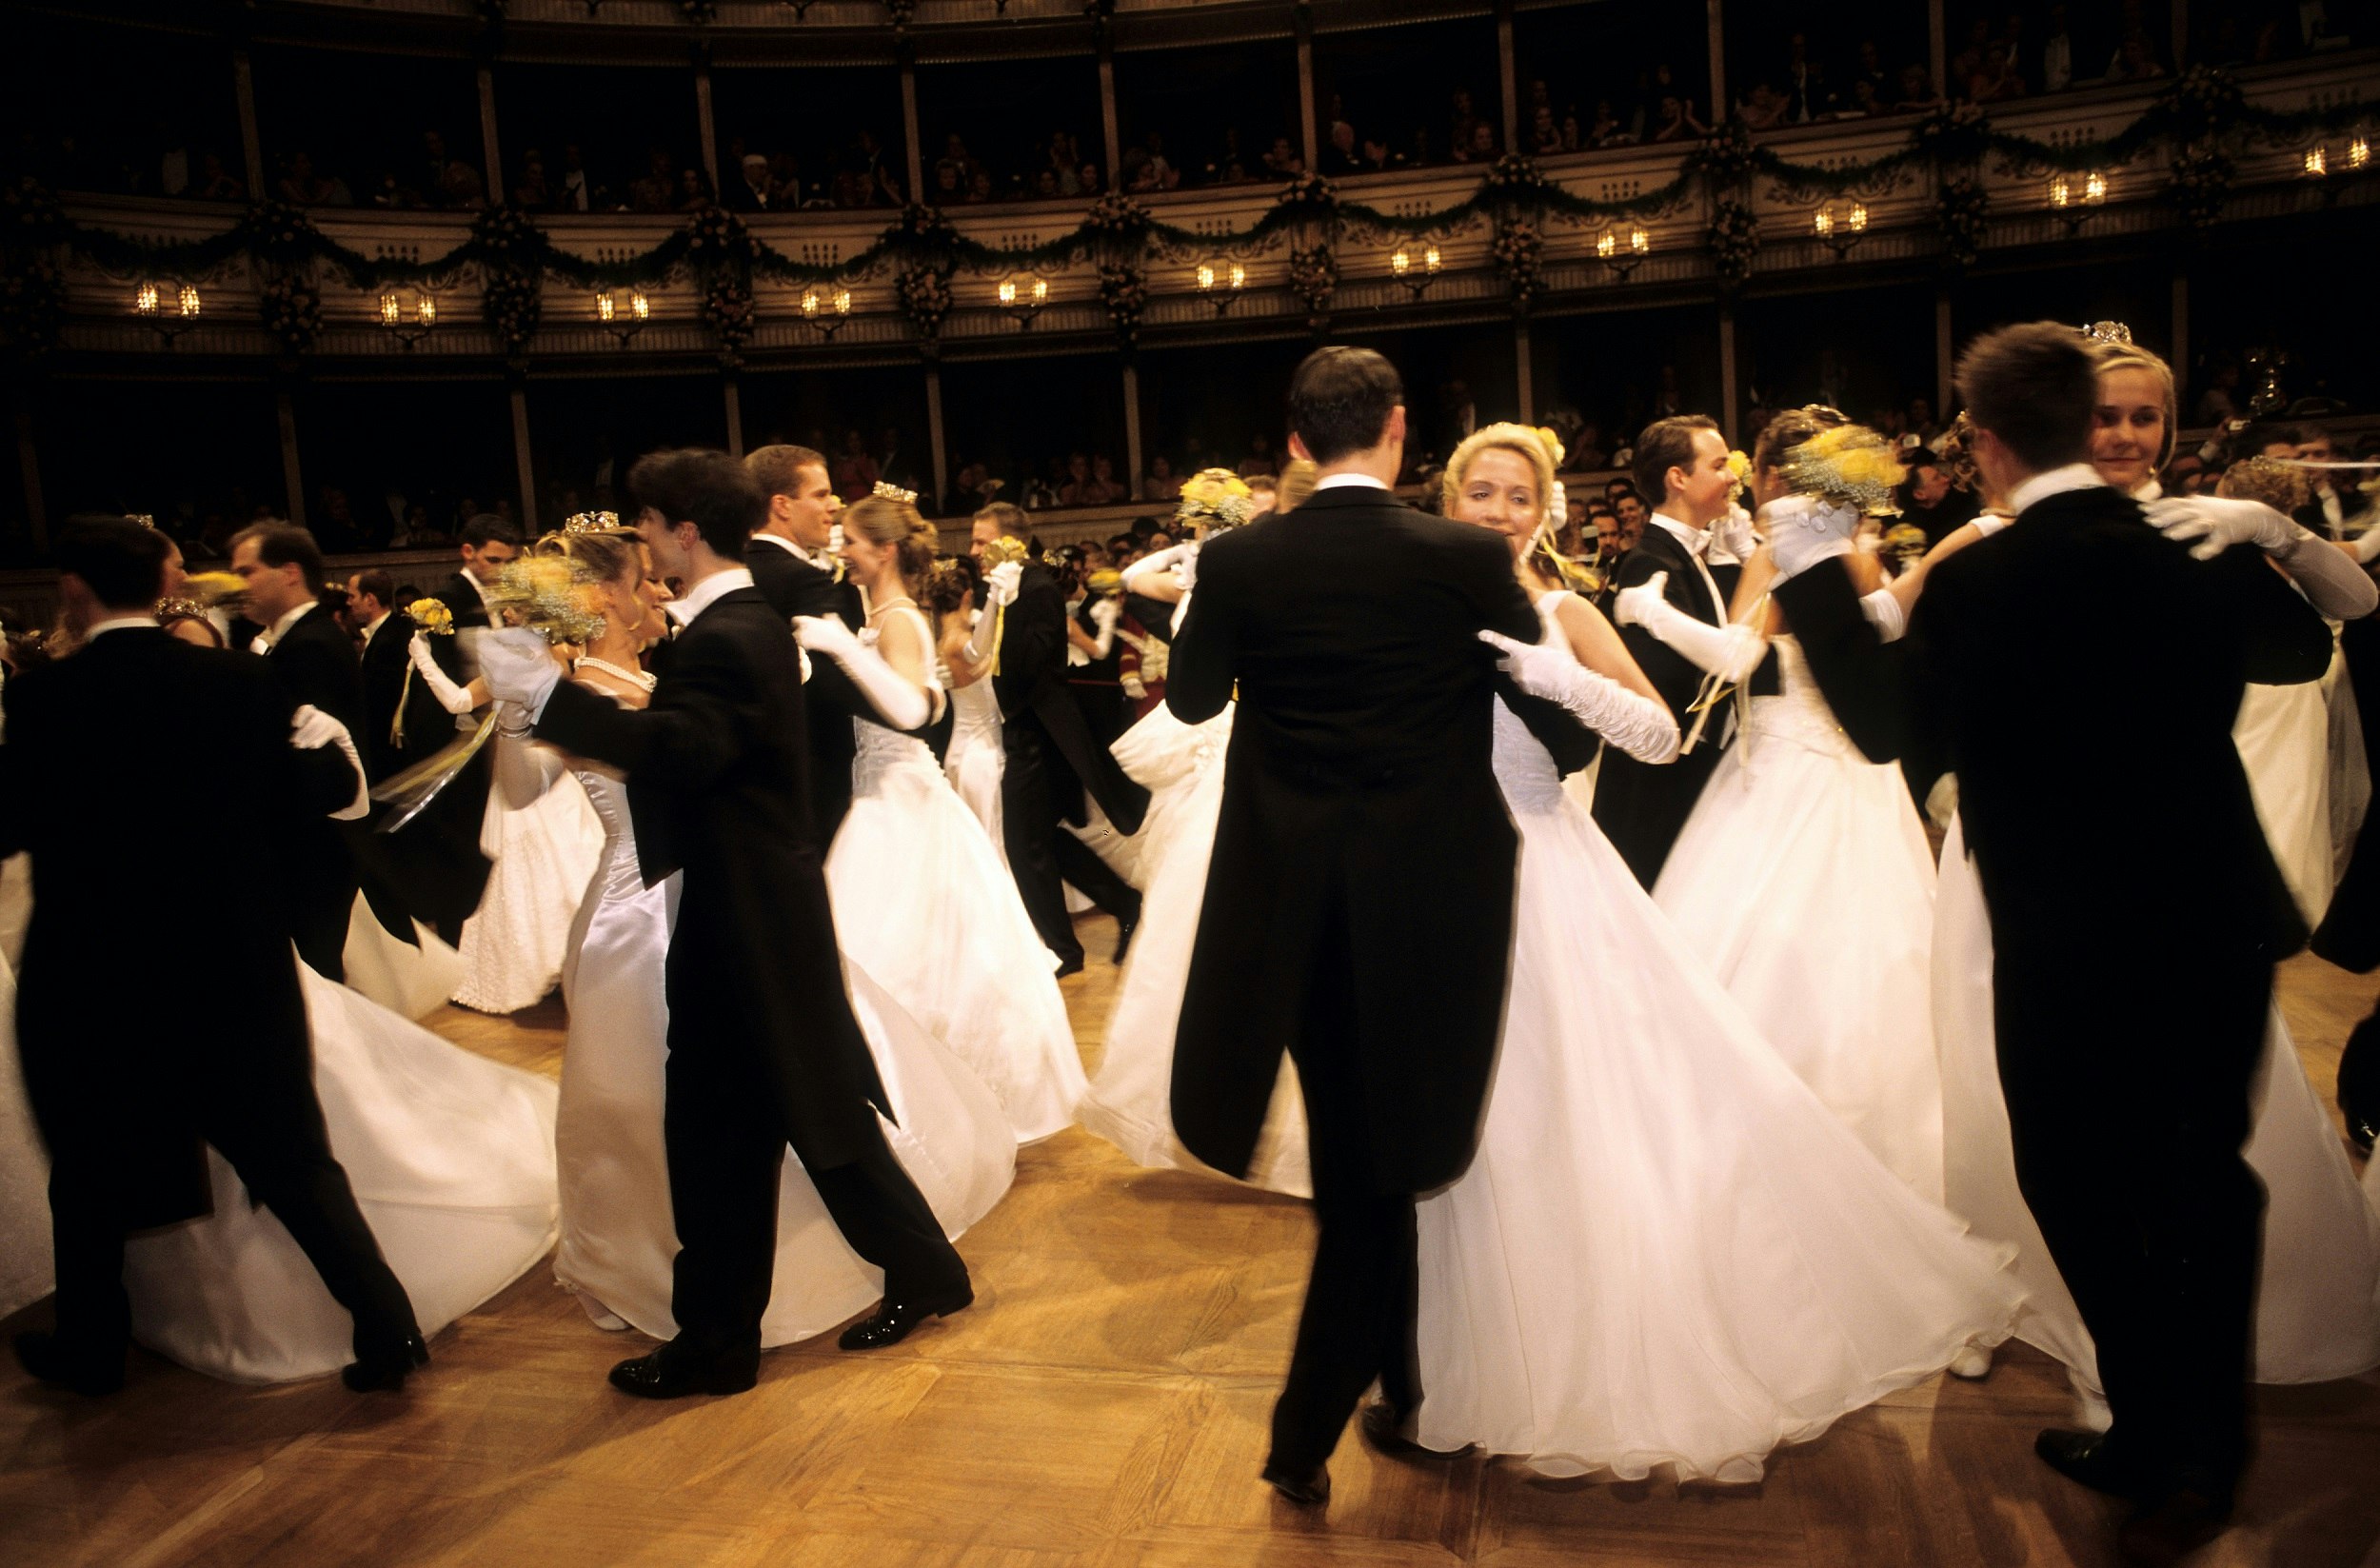 En oskärpa av dansare rör sig runt dansgolvet, med män i svarta kostymer och kvinnor i vita klänningar